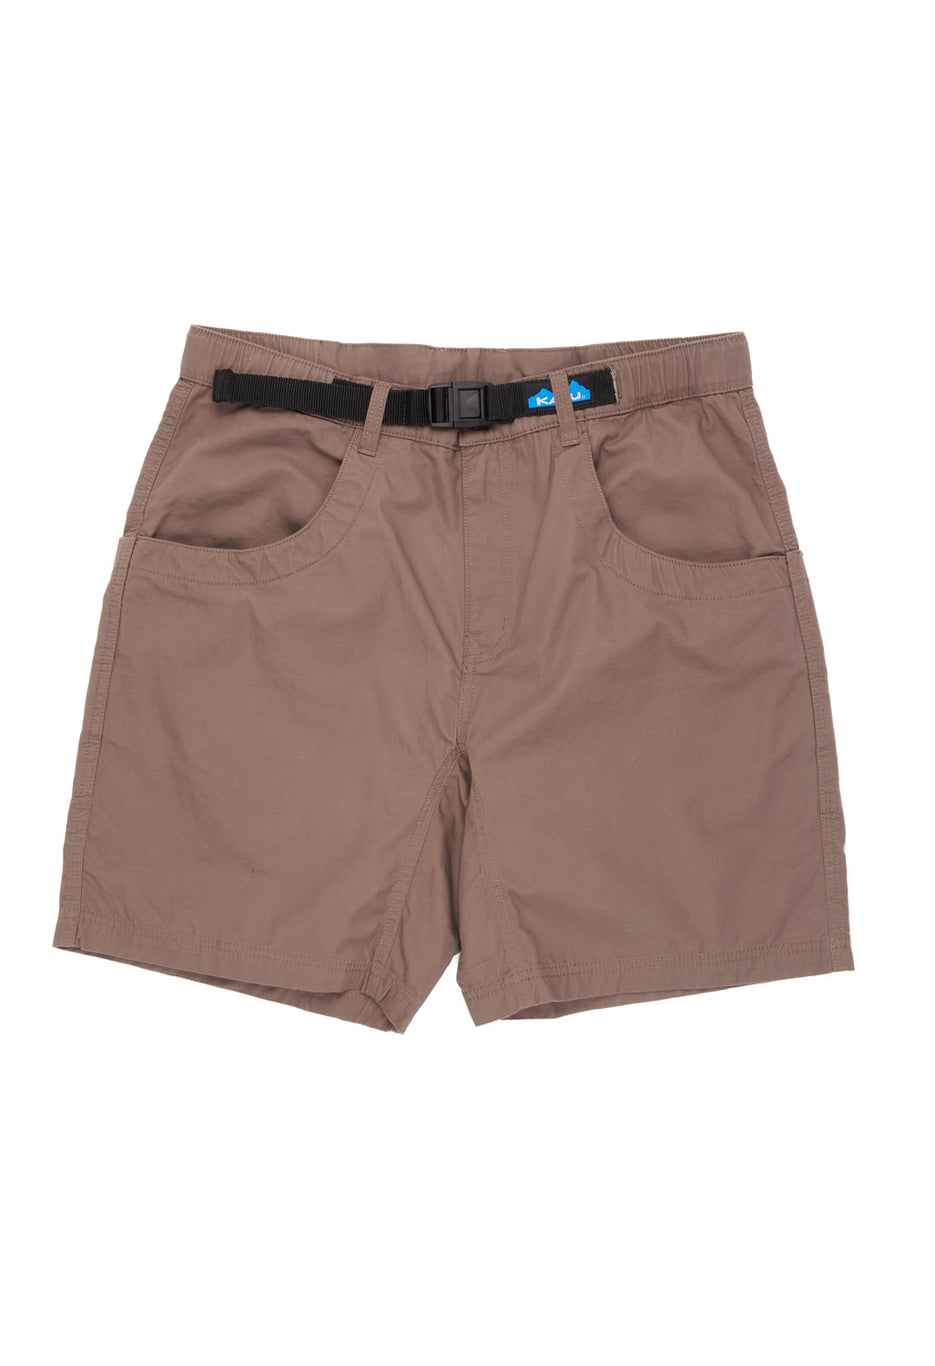 KAVU Men's Chilli Lite Shorts - Walnut